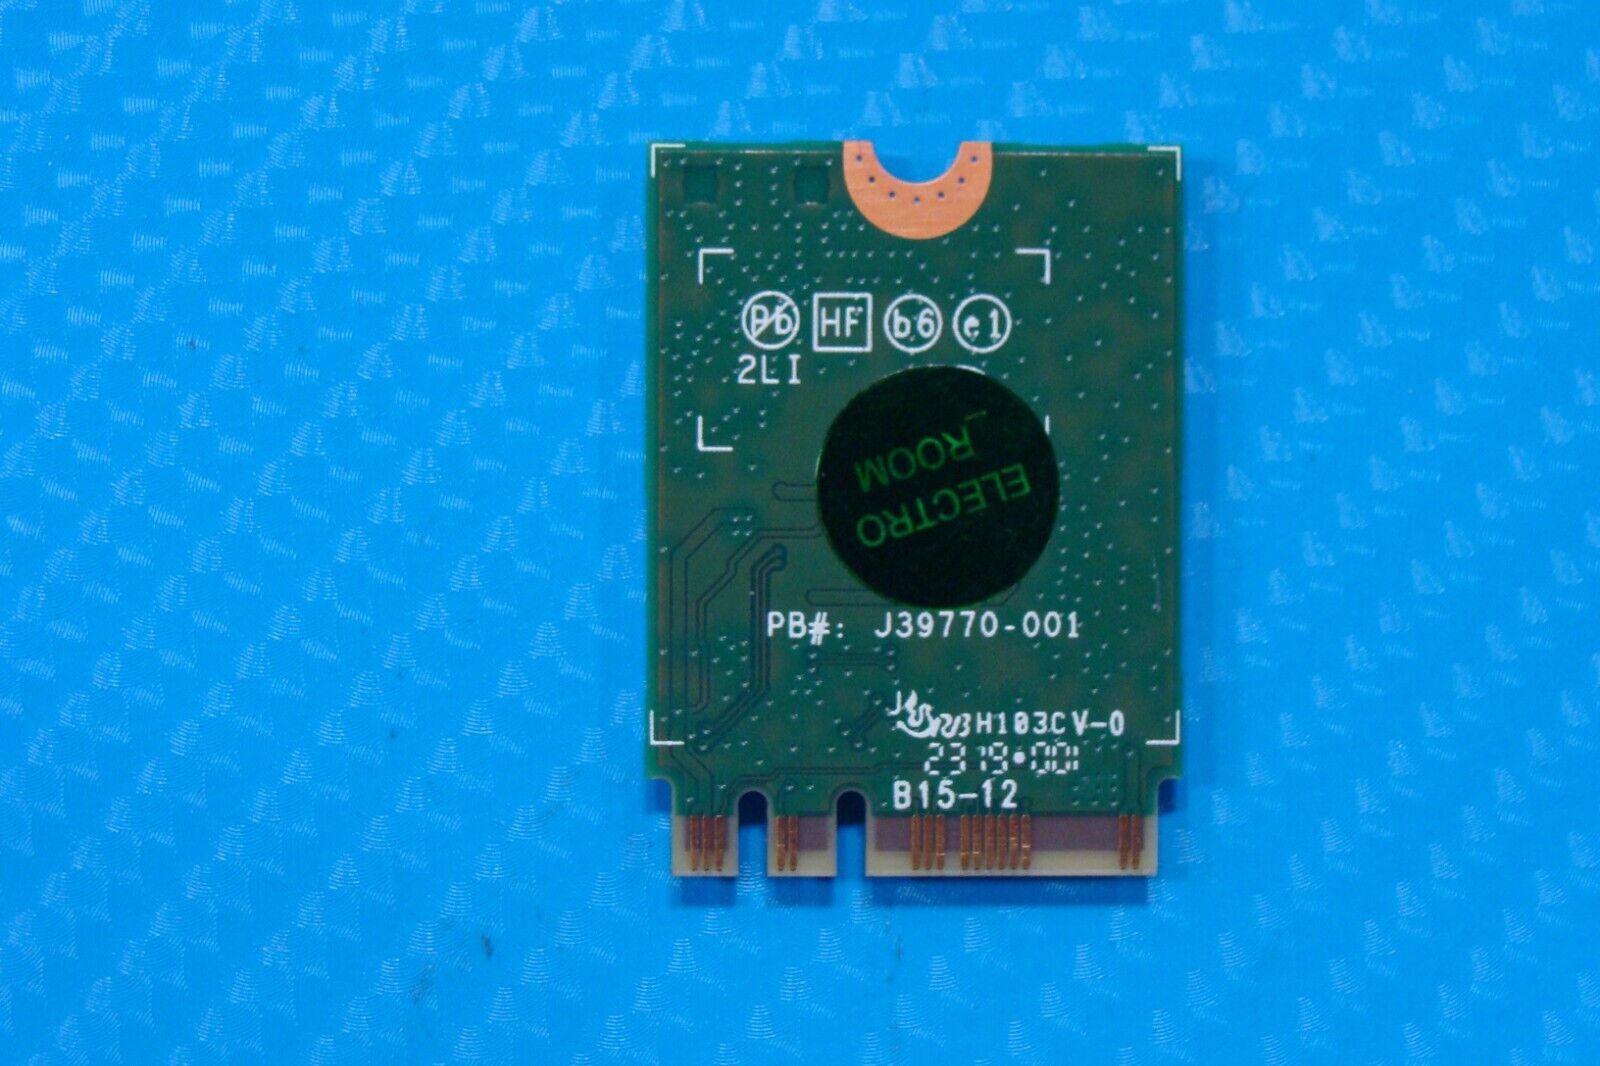 Lenovo ThinkPad 14” T495 Genuine Wireless WiFi Card 9260NGW 01AX769 920687-001